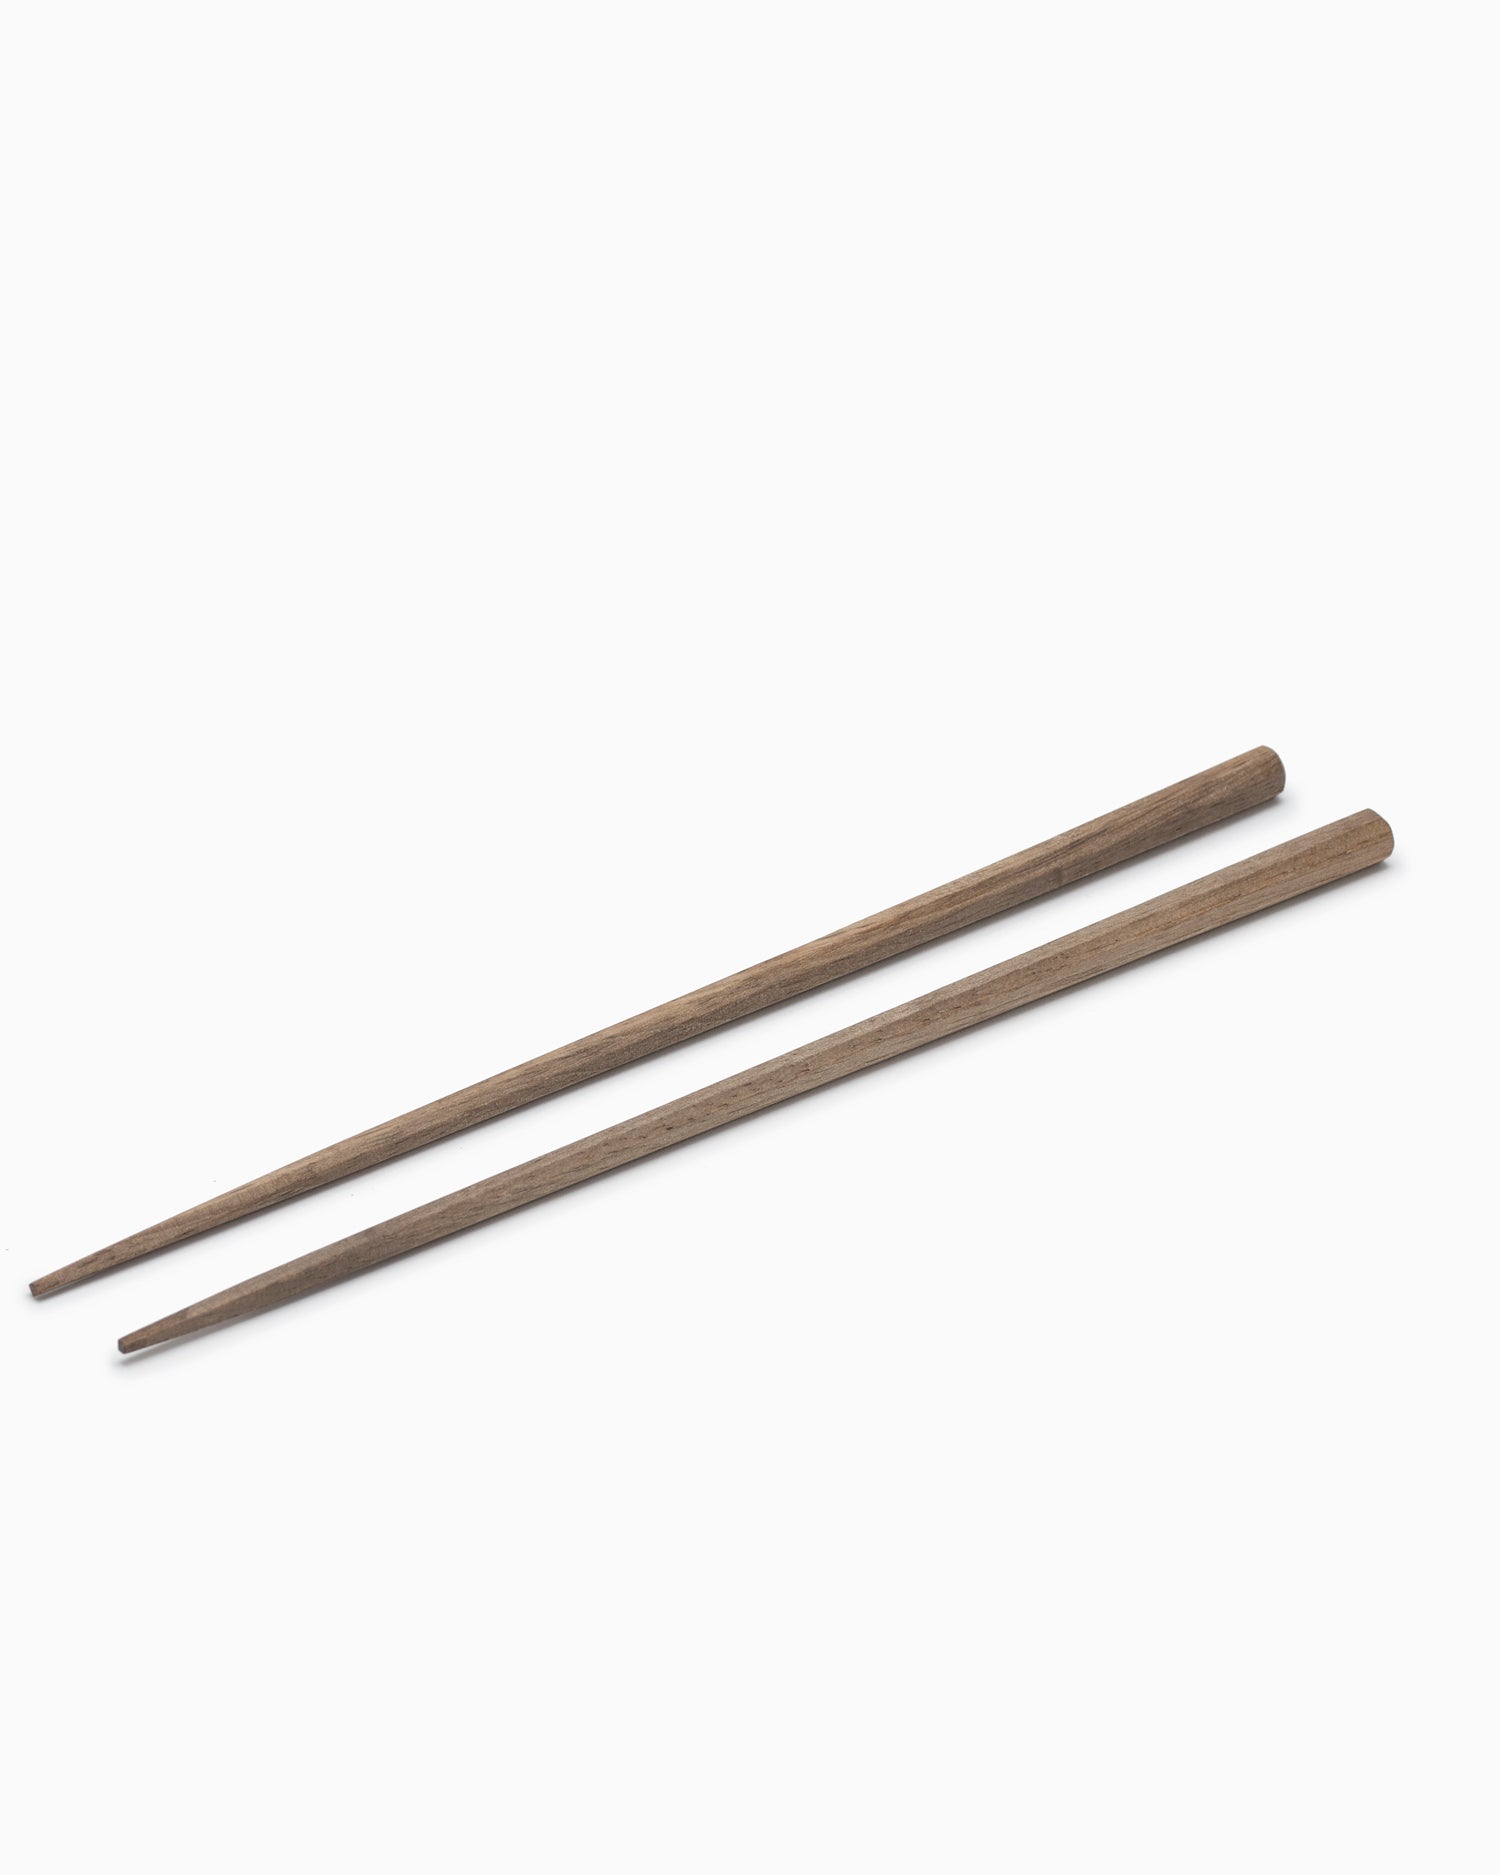 Wooden Chopsticks - Persimmon